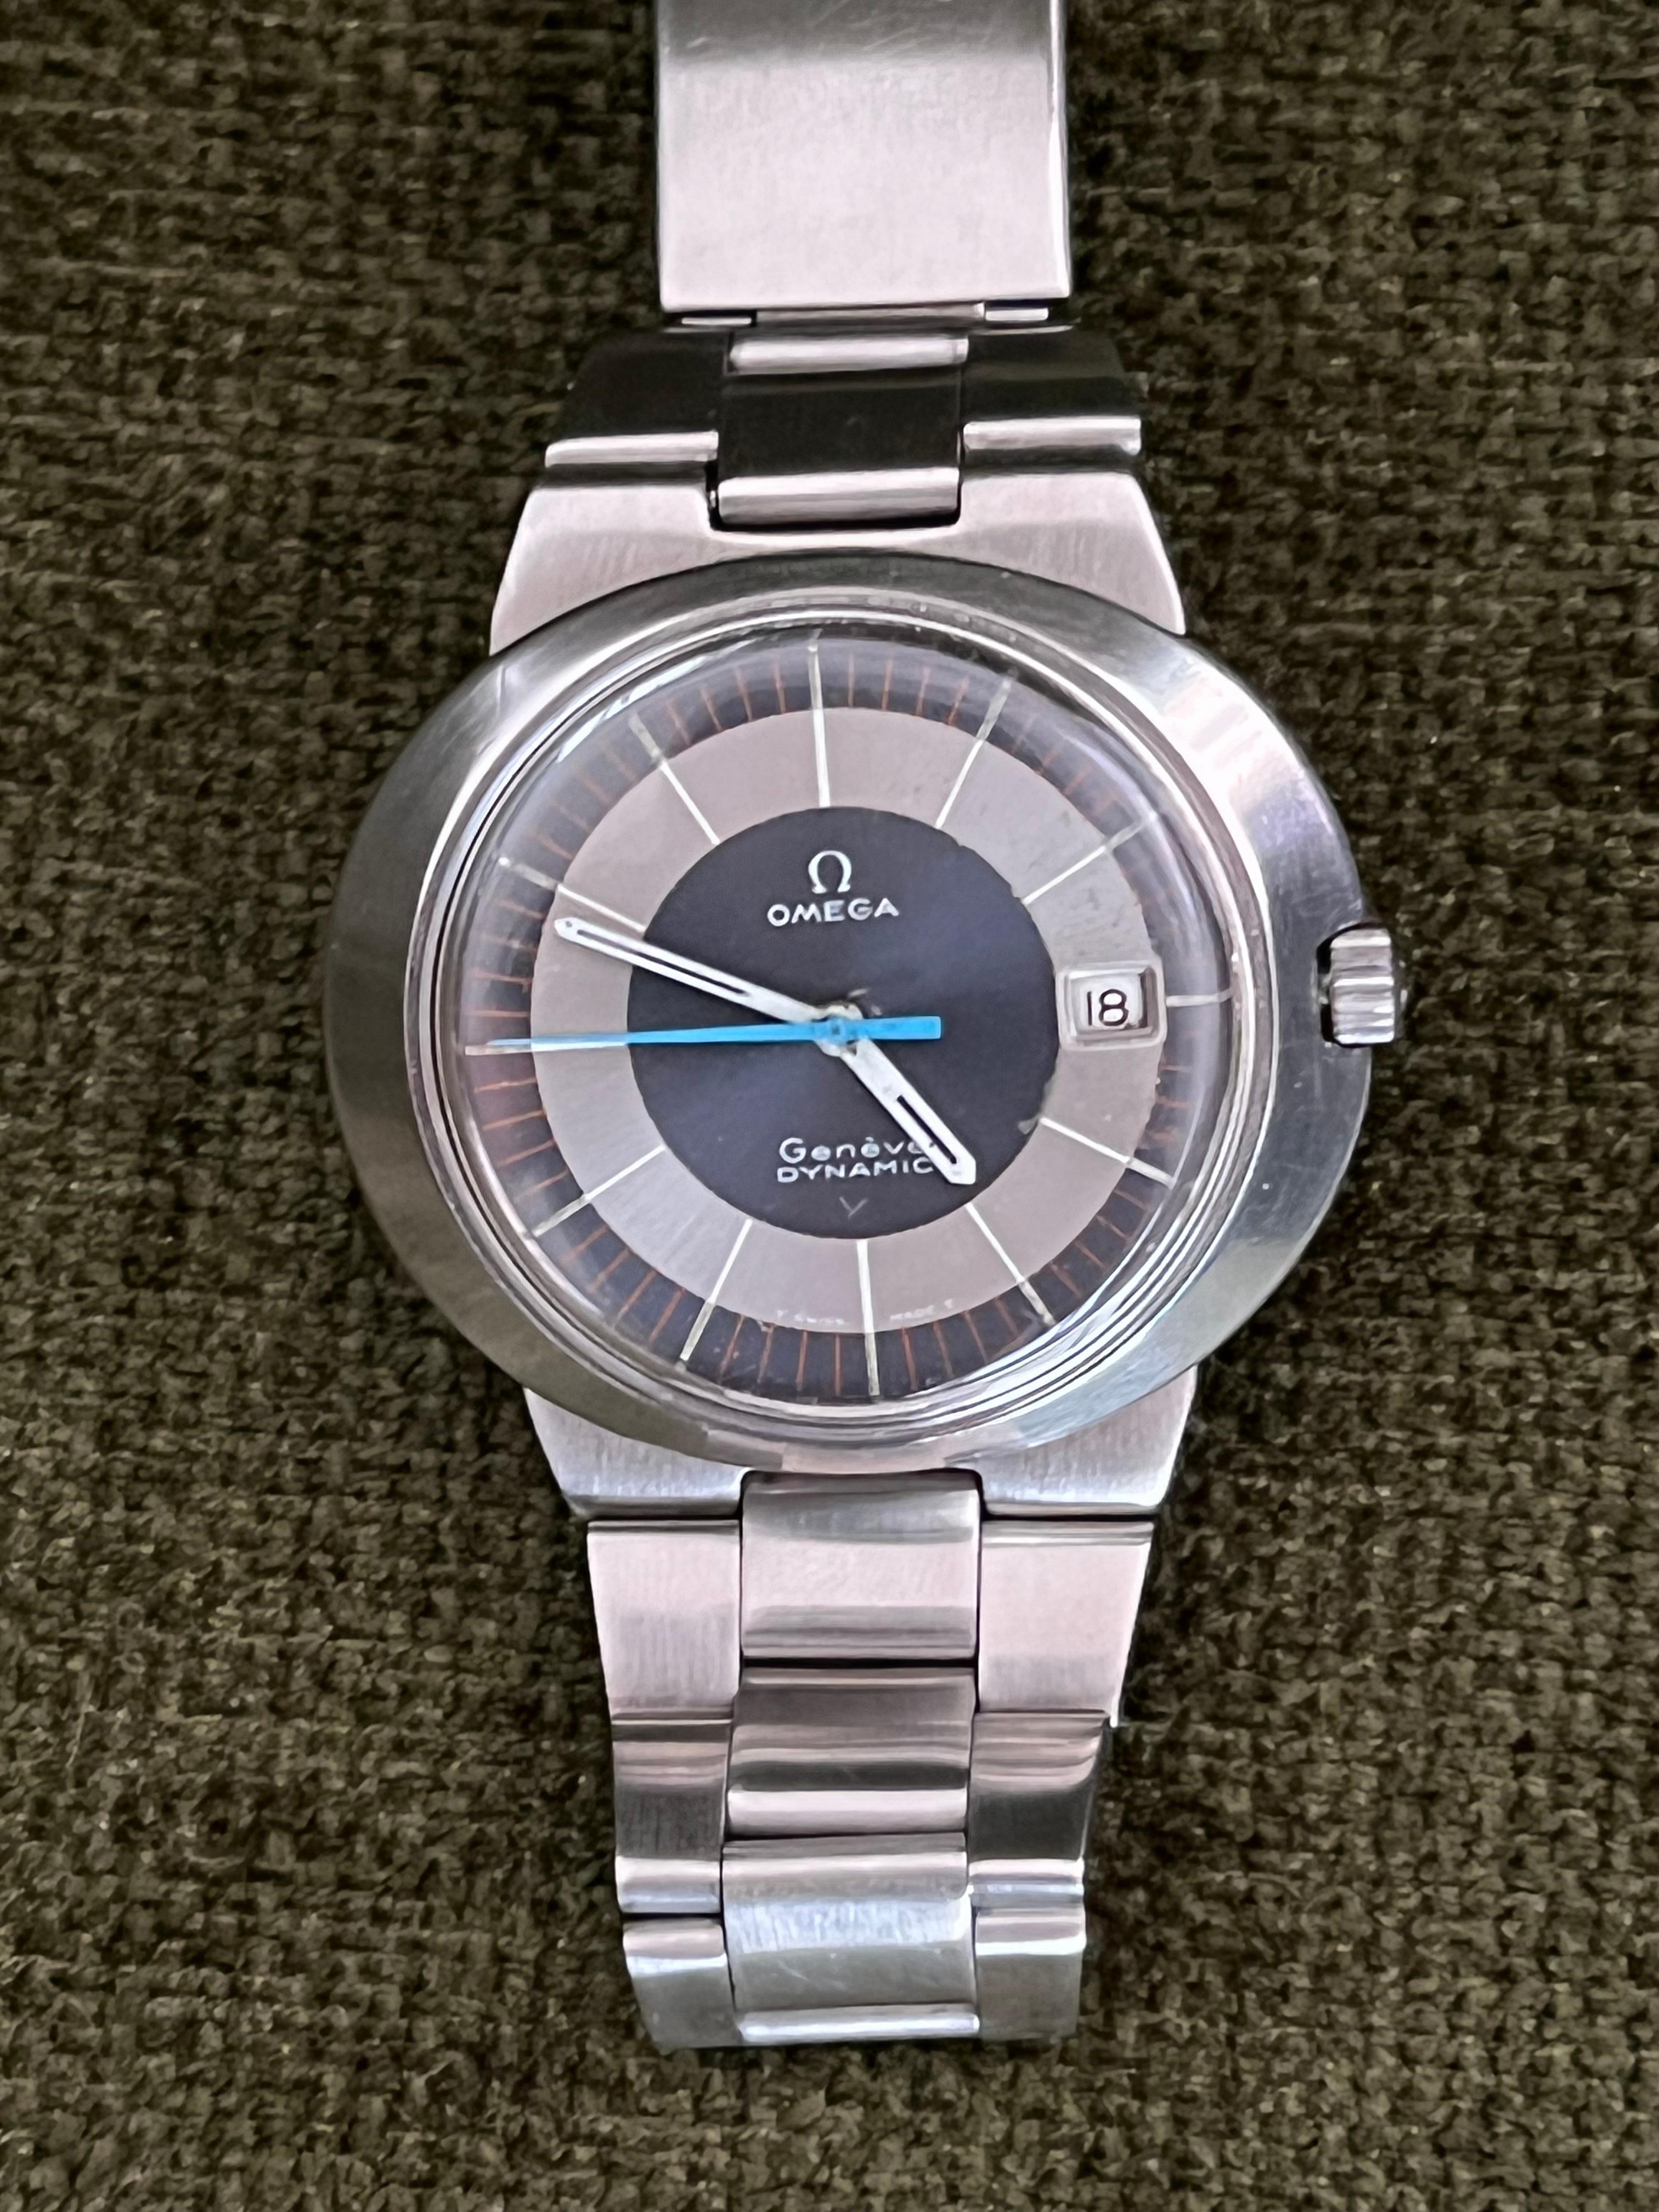 Peu de montres sur le marché peuvent rivaliser avec le look simple mais unique de la très convoitée Omega Dynamic. Ce garde-temps est doté d'un magnifique boîtier ovale en acier inoxydable qui mesure environ 42 mm (du boîtier à la couronne) x 11 mm